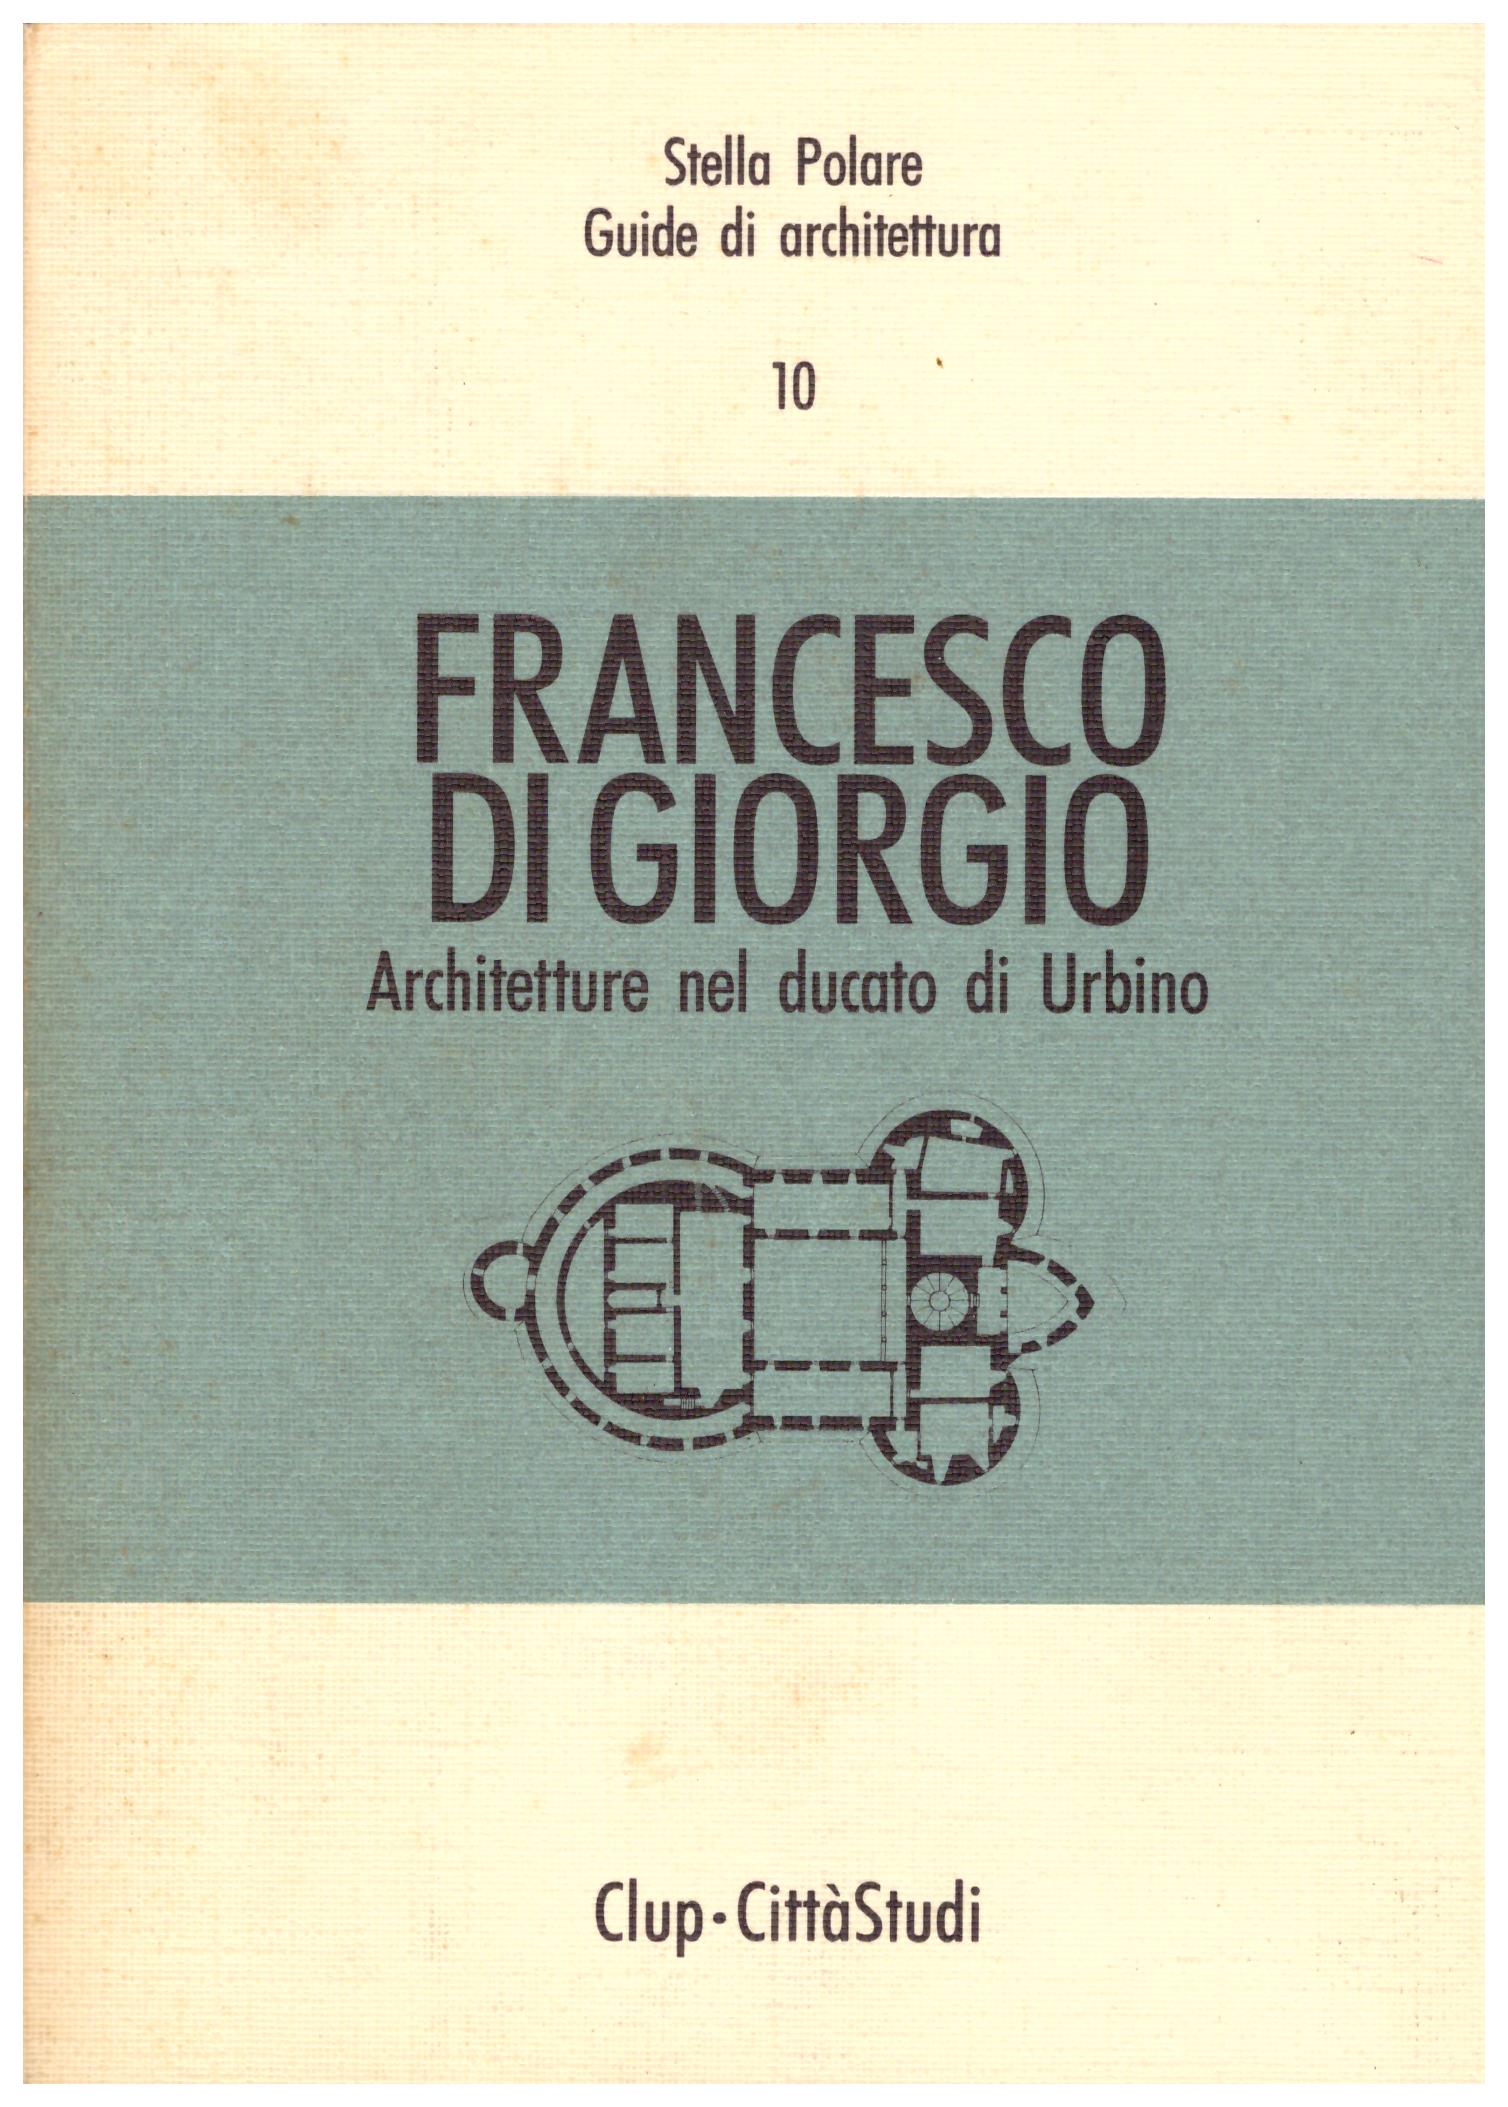 Titolo: Francesco Di Giorgio Architetto nel ducato di Urbino  Autore: Fulgenzio Maria Sgariglia  Editore: clup-città studi 1991